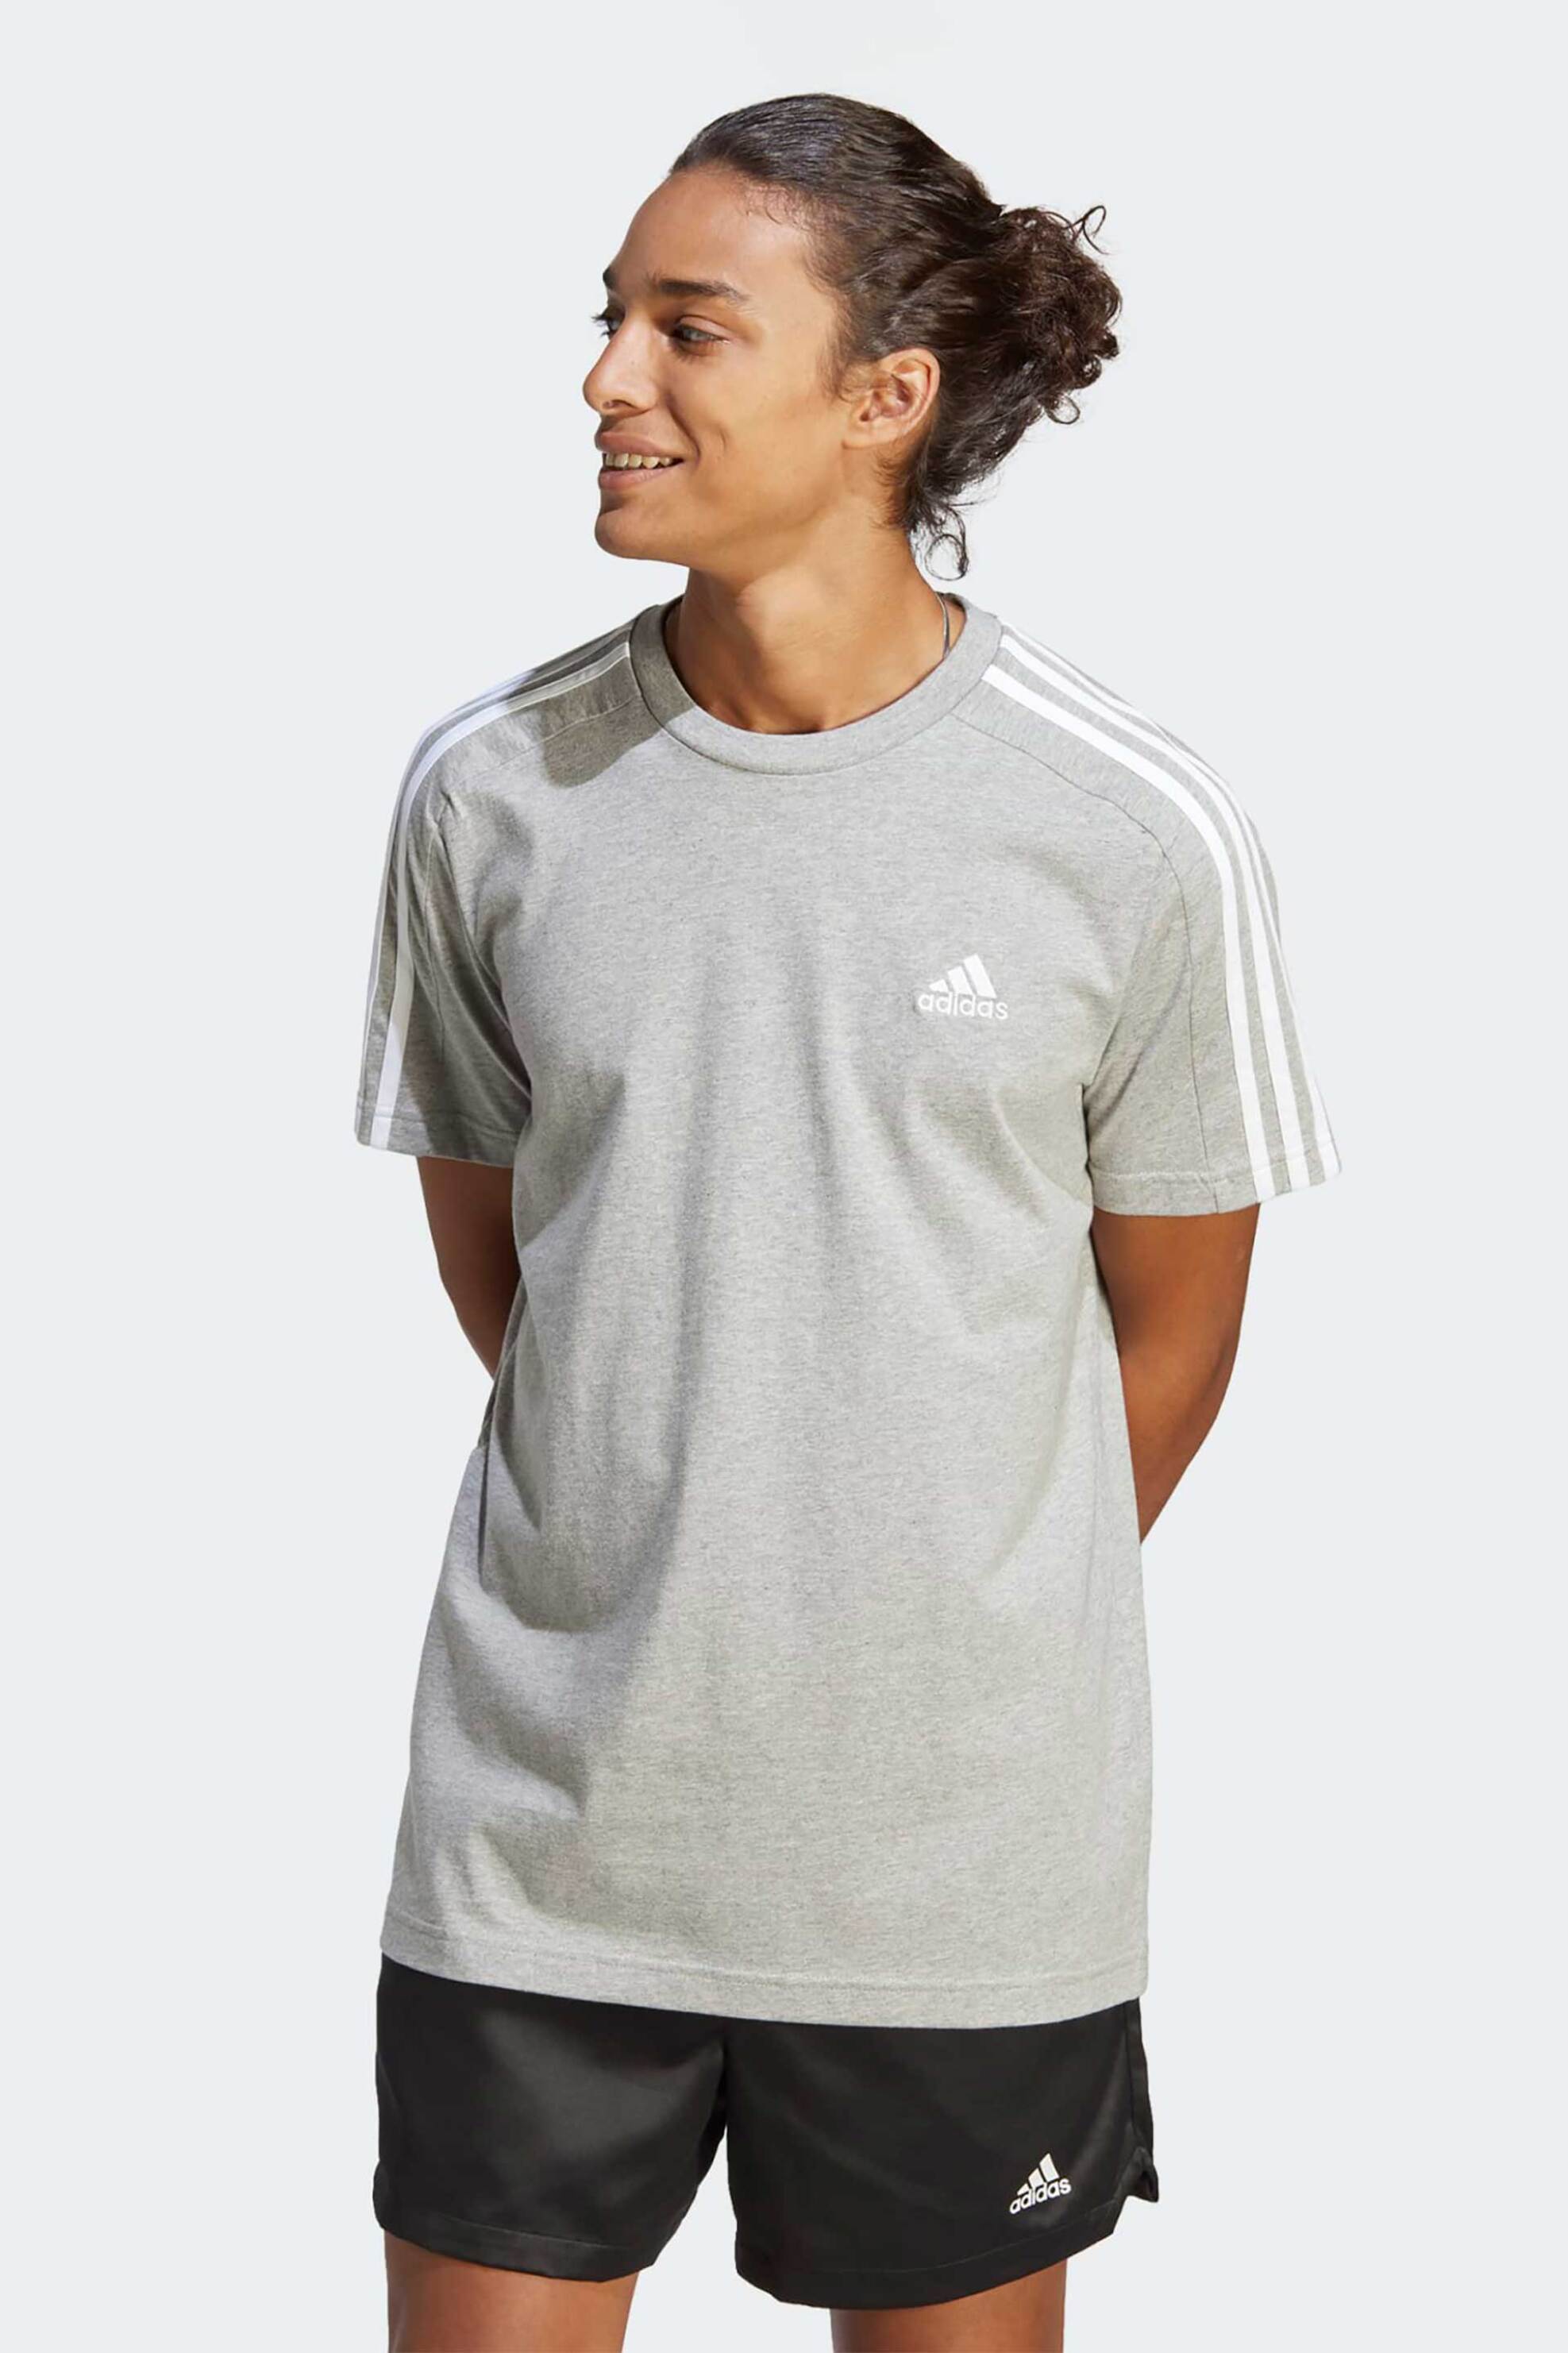 Ανδρική Μόδα > Ανδρικά Αθλητικά > Ανδρικά Αθλητικά Ρούχα > Αθλητικές Μπλούζες > Ανδρικά Αθλητικά T-Shirts Adidas ανδρικό T-shirt Regular Fit "Essential 3-Strips" - IC9337 Γκρι